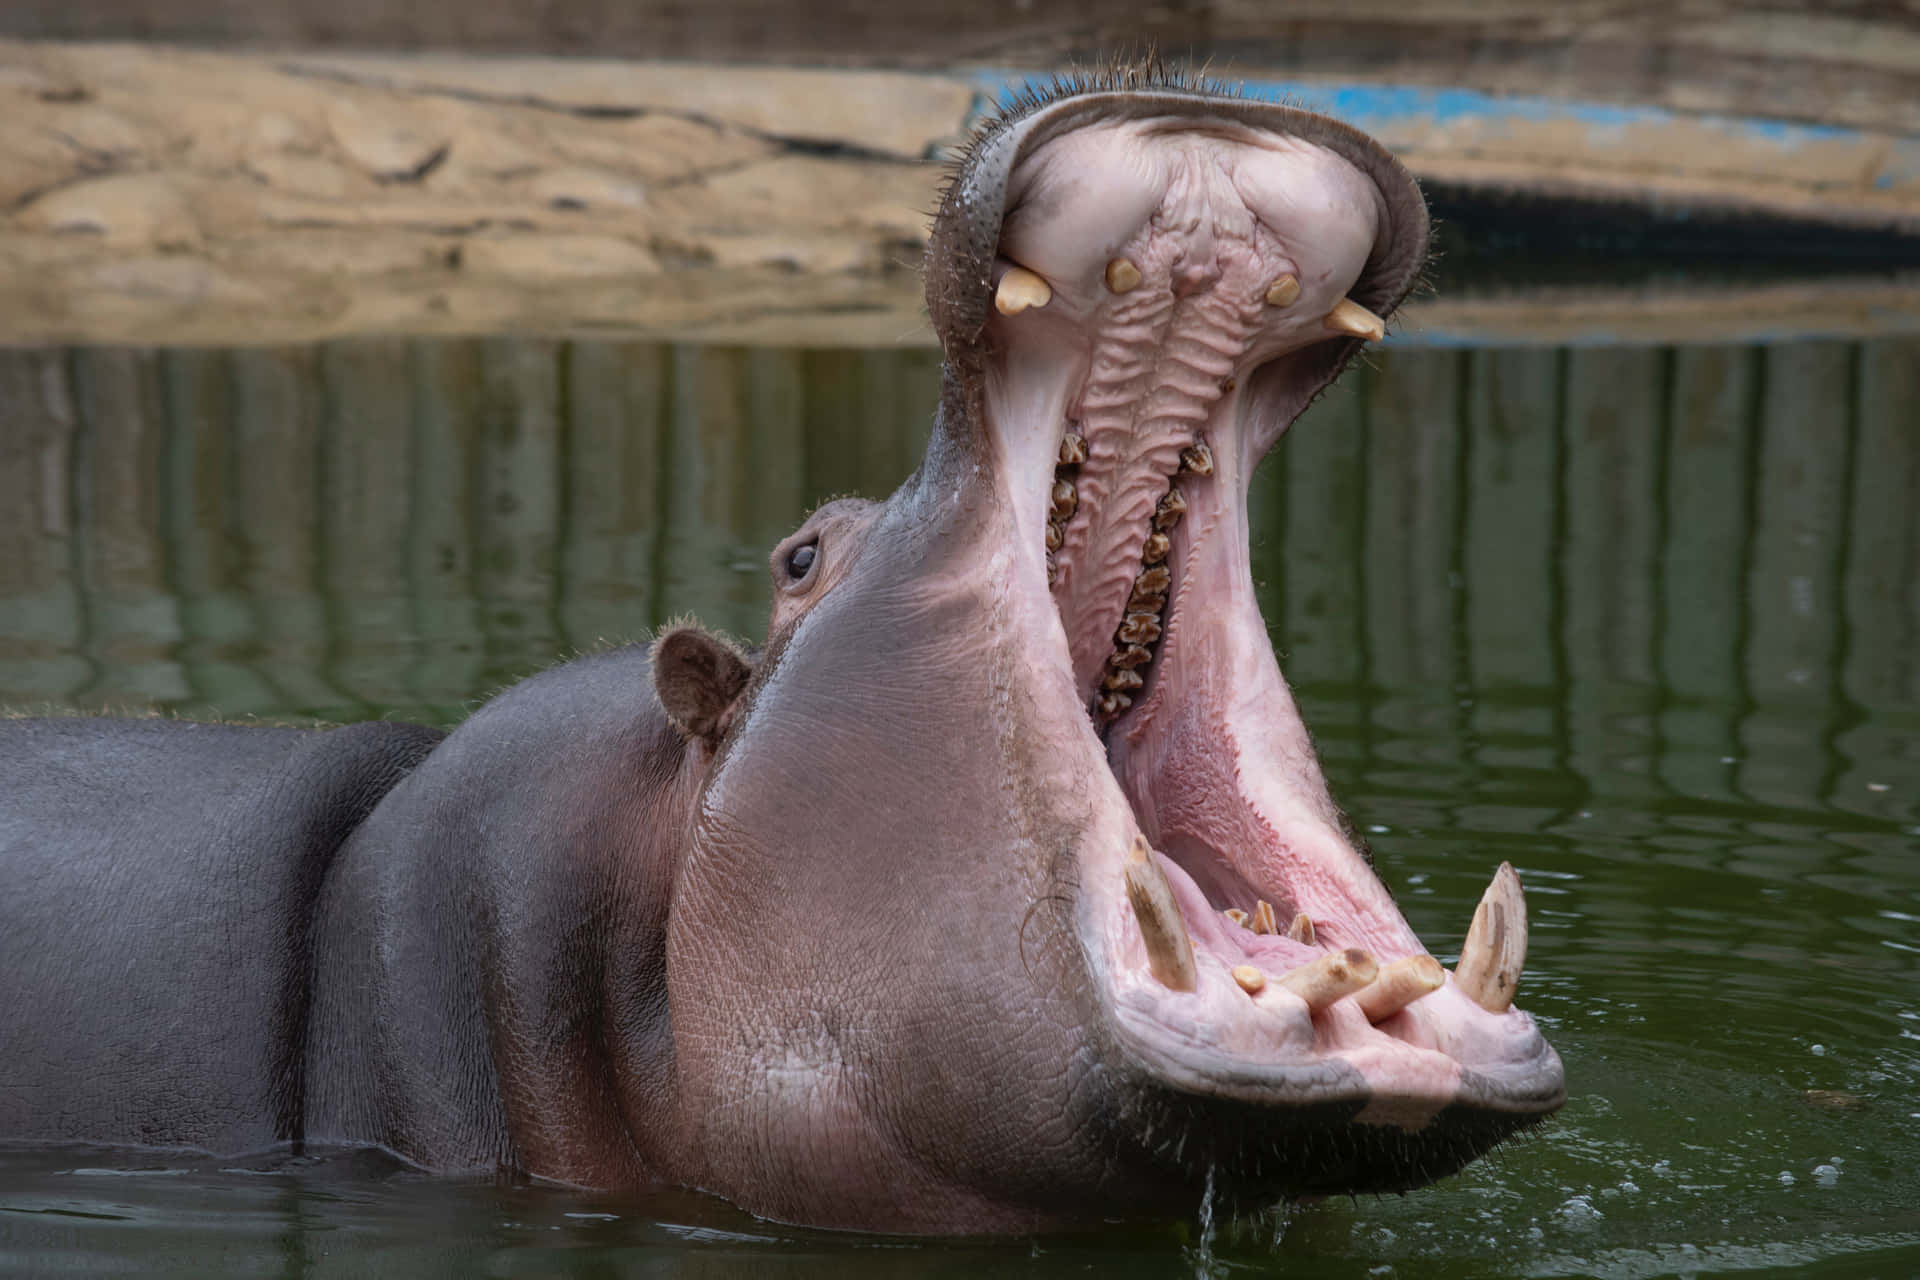 Imagende Un Hipopótamo Con La Boca Abierta En El Río